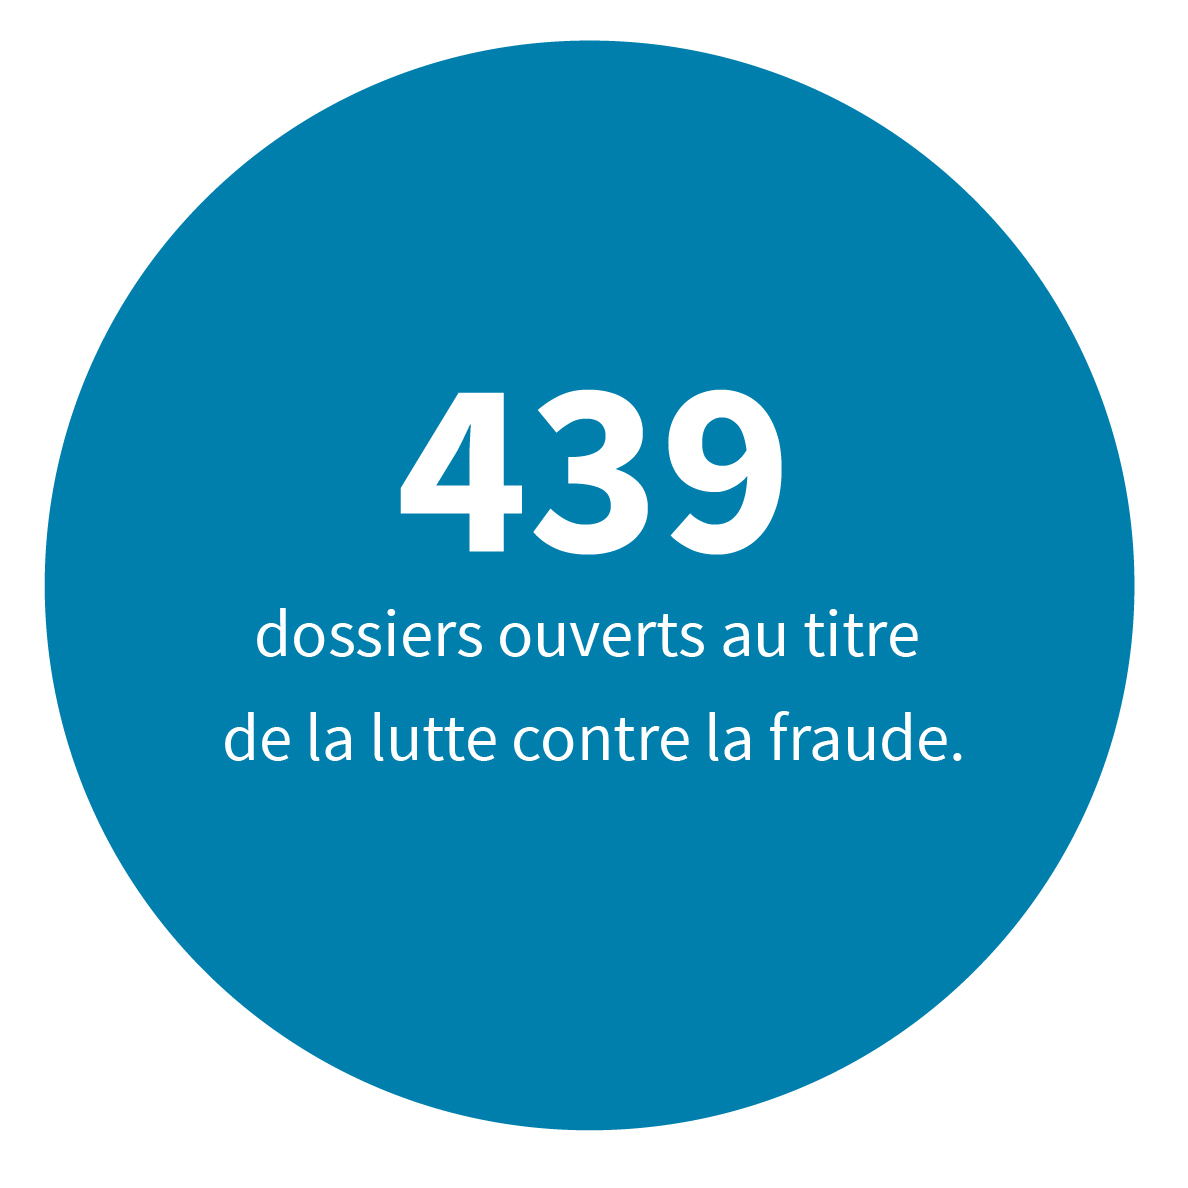 439 dossiers ouverts au titre  de la lutte contre la fraude.